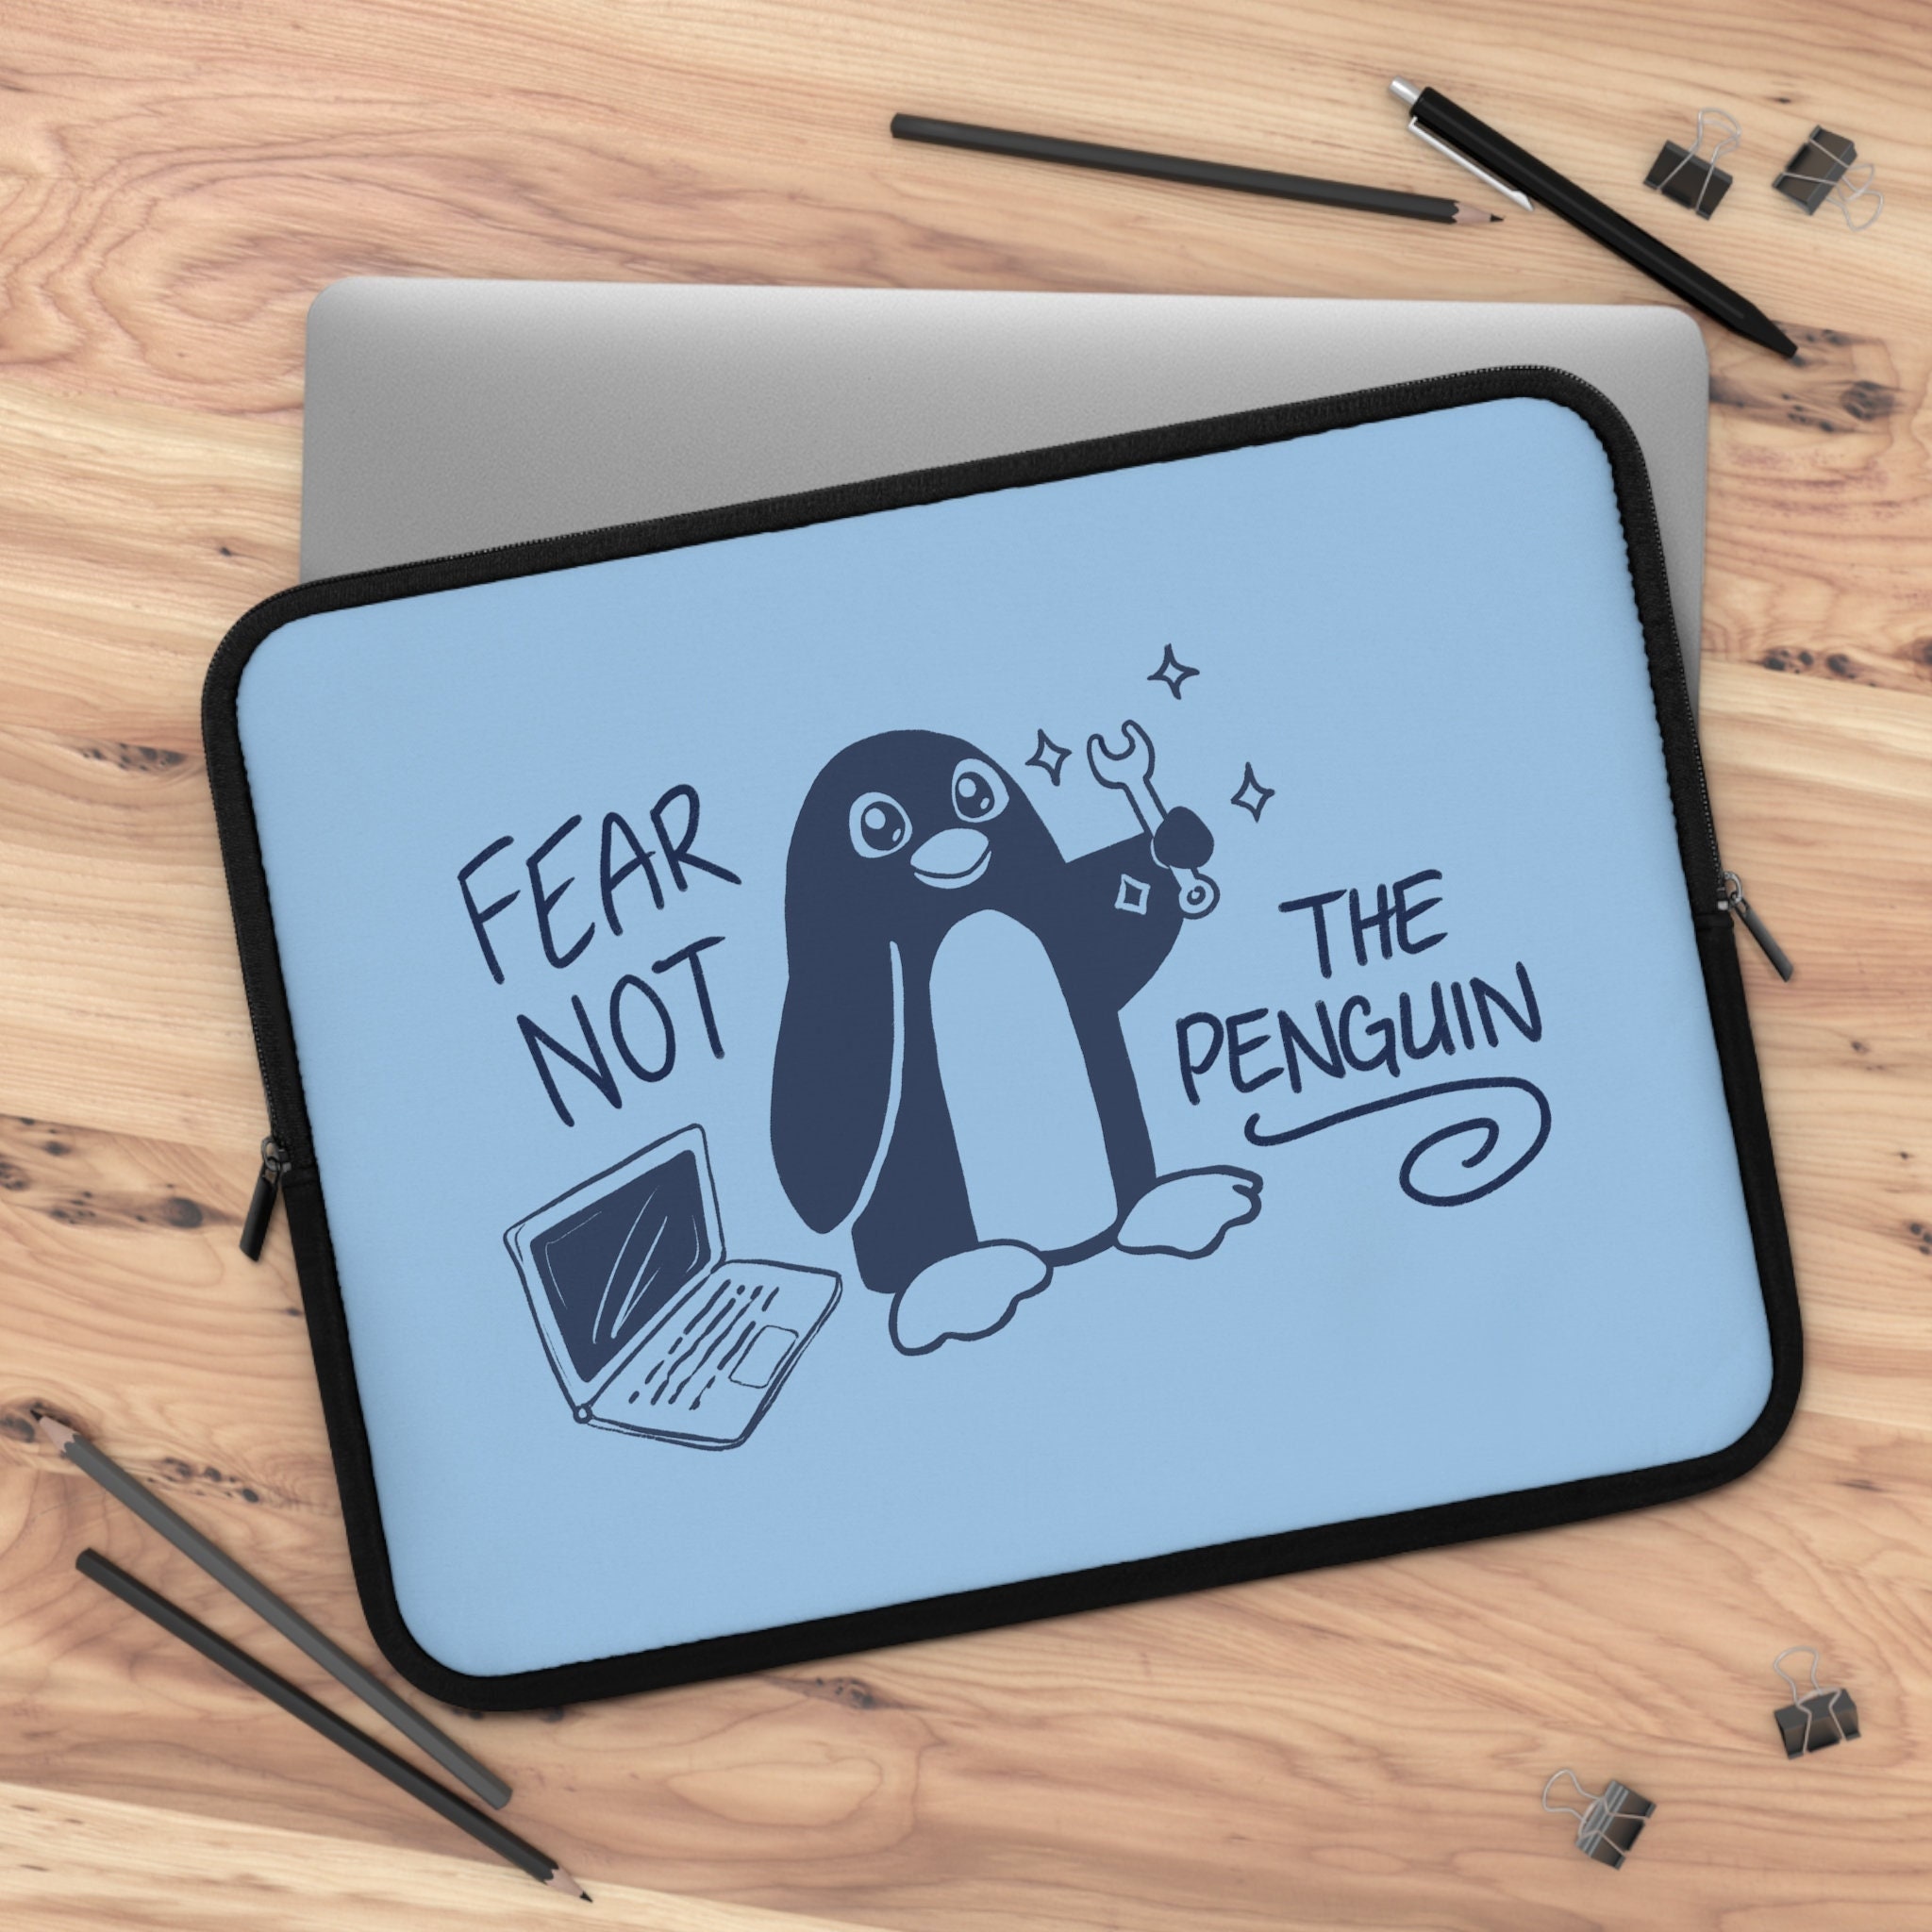 Tir-Bouchon Drôle Pingouin